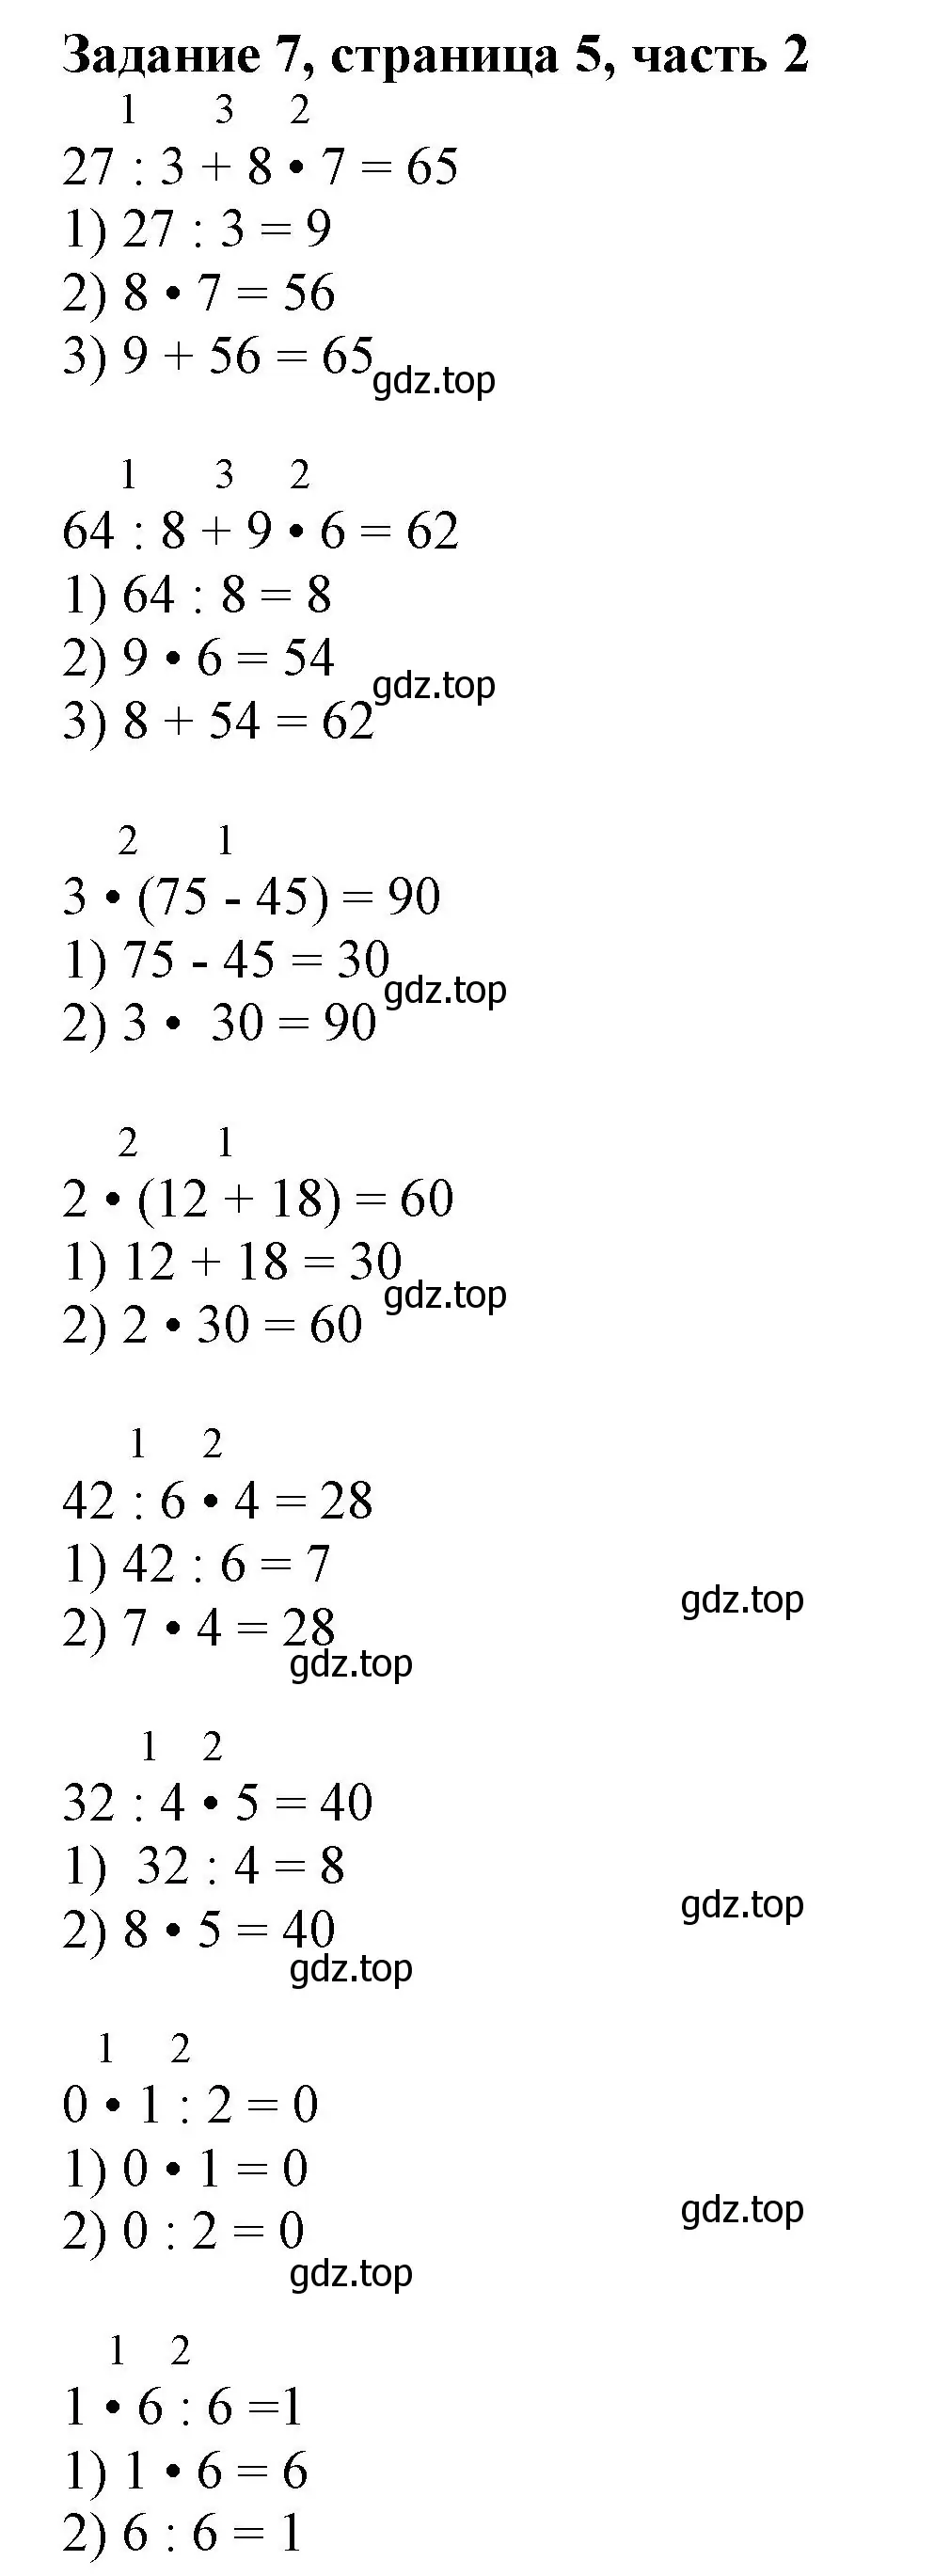 Решение номер 7 (страница 5) гдз по математике 3 класс Моро, Бантова, учебник 2 часть